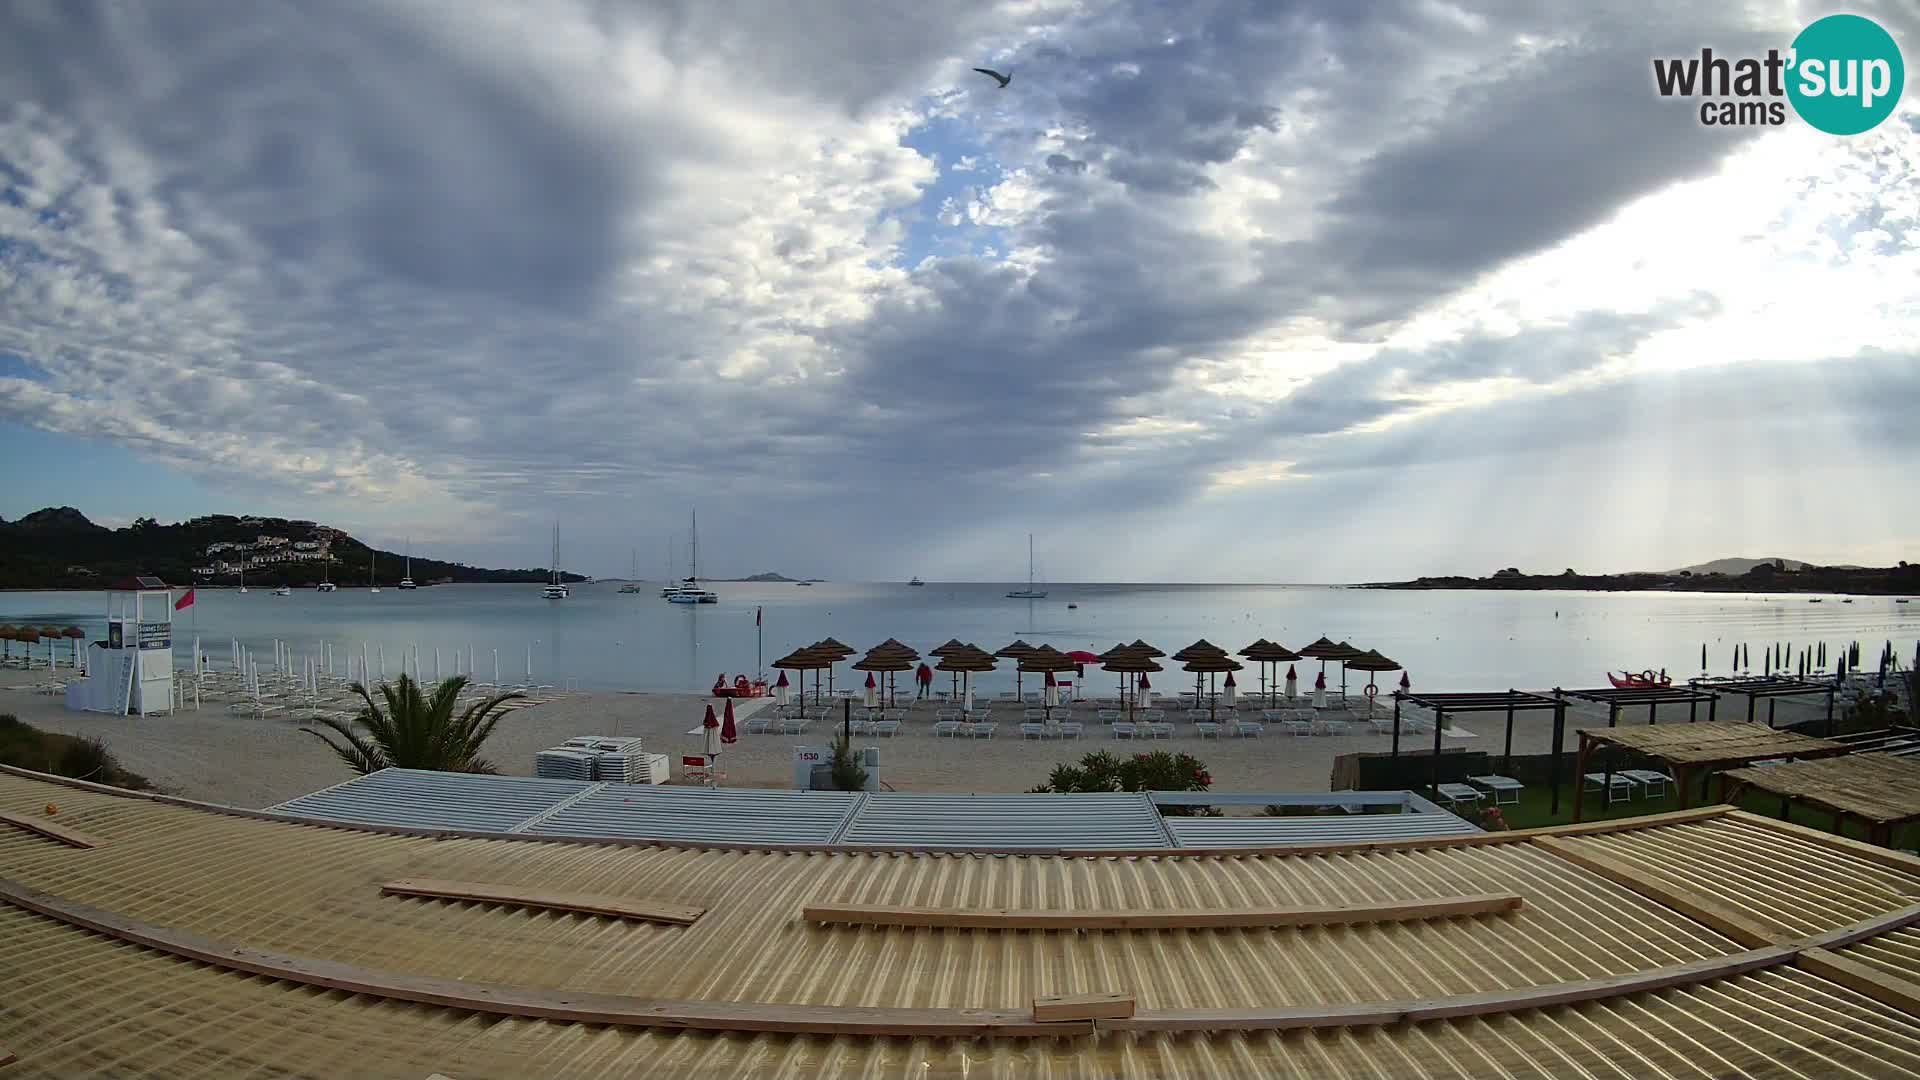 Cámara en vivo de la playa Marinella – Porto Rotondo livecam Olbia – Cerdeña